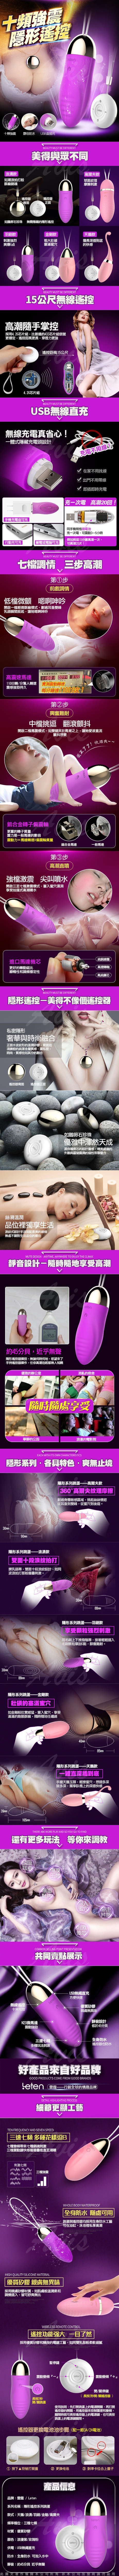 香港LETEN 隱形寶貝系列 天鵝 SWAN 3X7頻 無線遙控情趣跳蛋 USB充電 粉